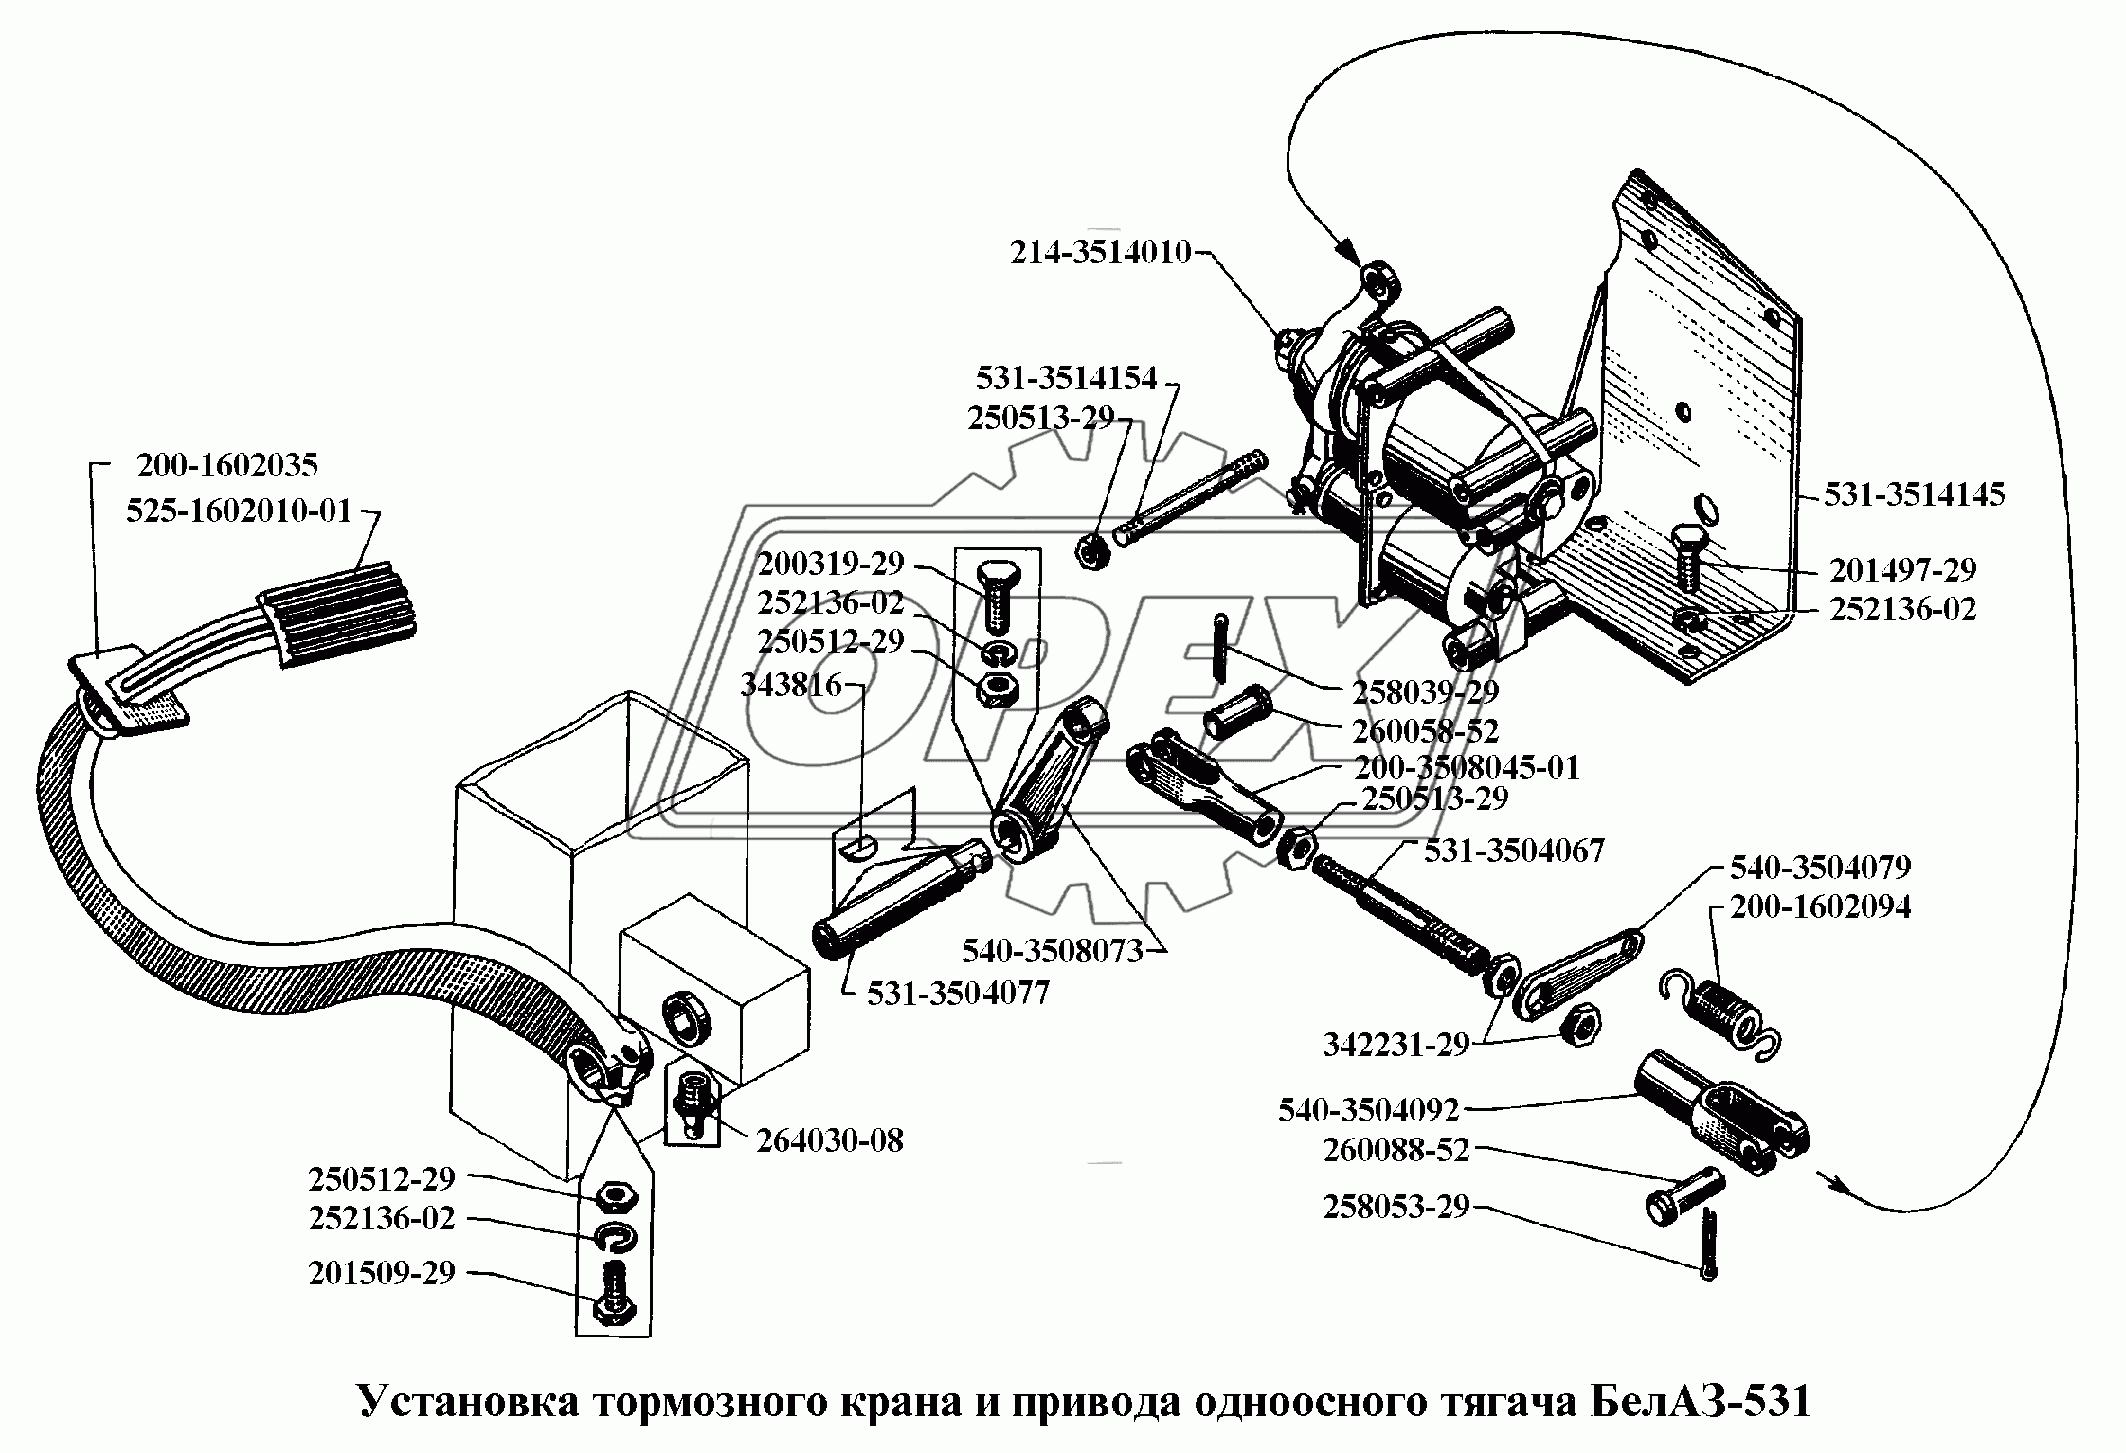 Установка тормозного крана и привода одноосного тягача БелАЗ-531